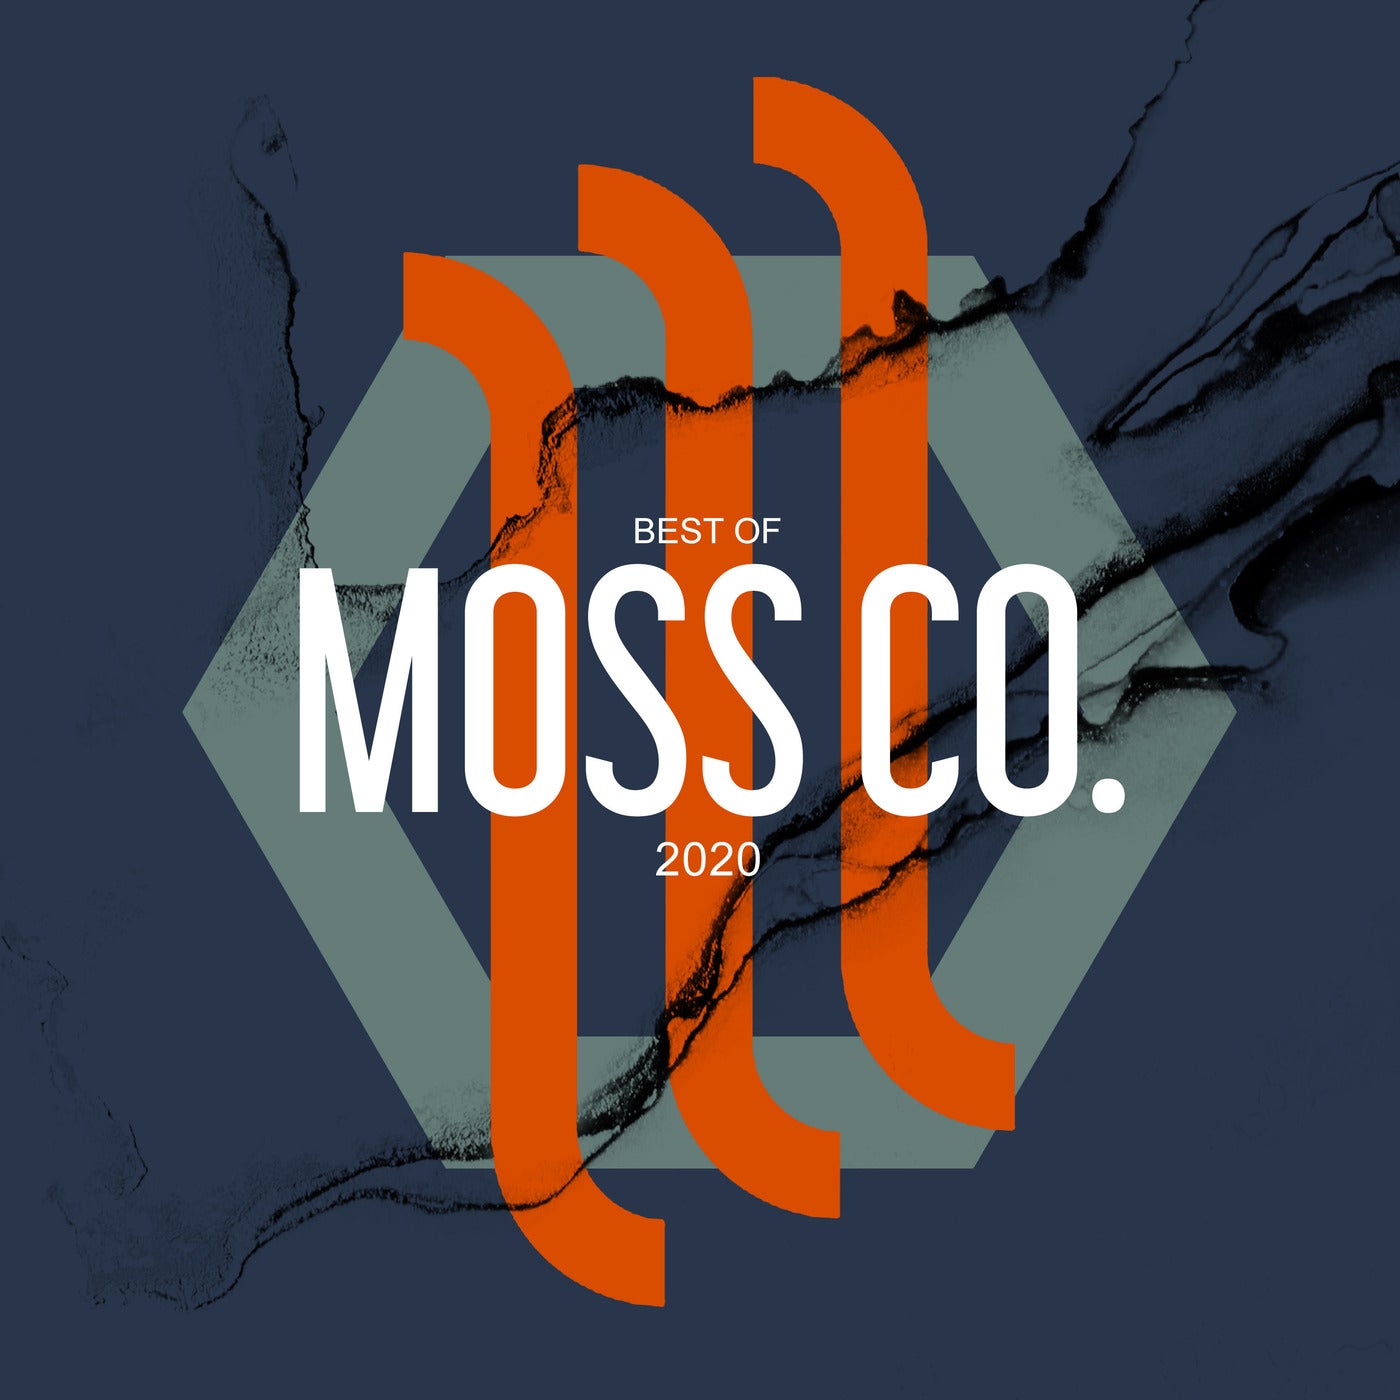 Best Of Moss Co. 2020